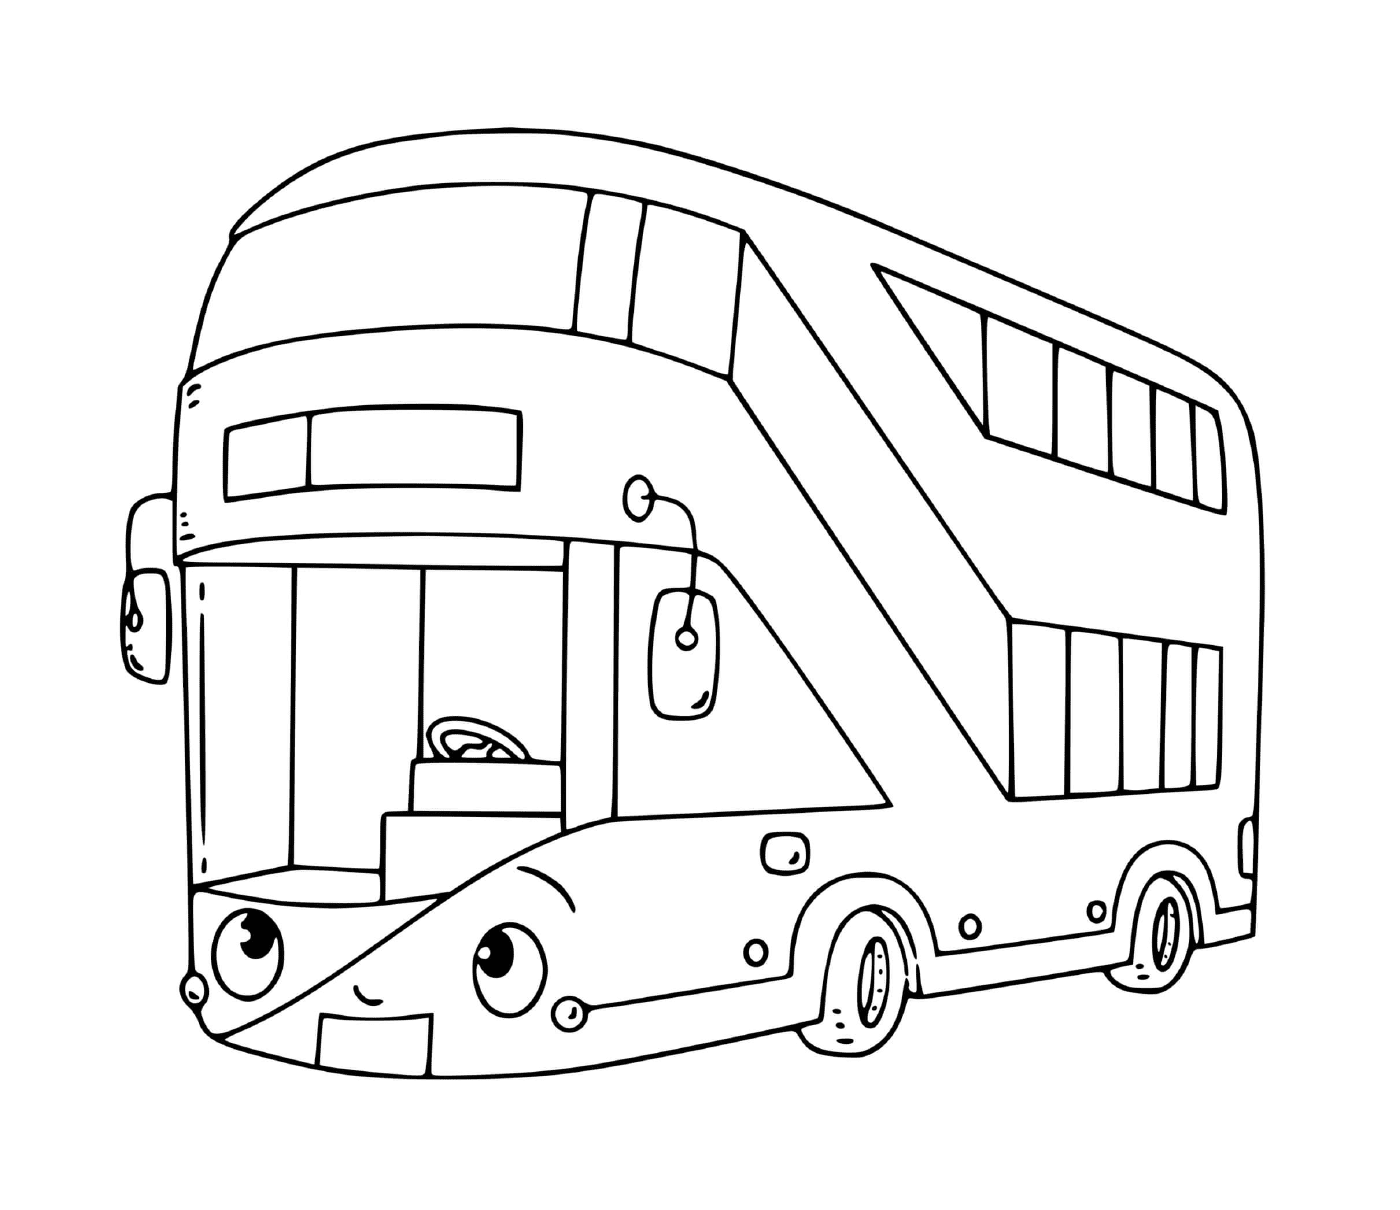  Двухэтажный автобус для перевозки 